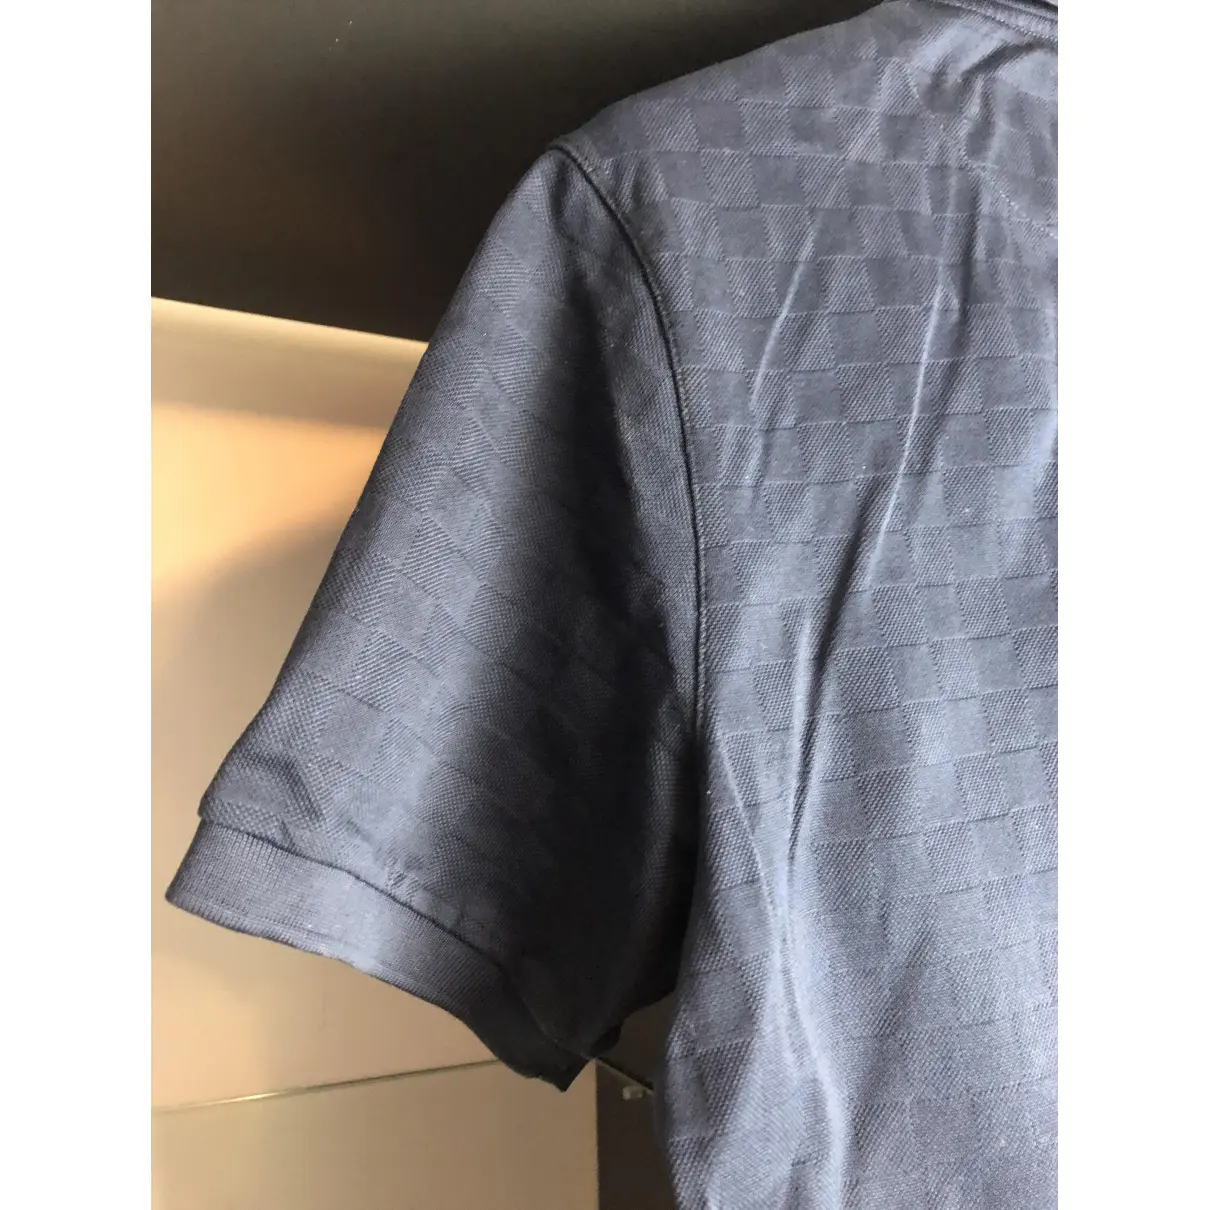 Polo shirt Louis Vuitton